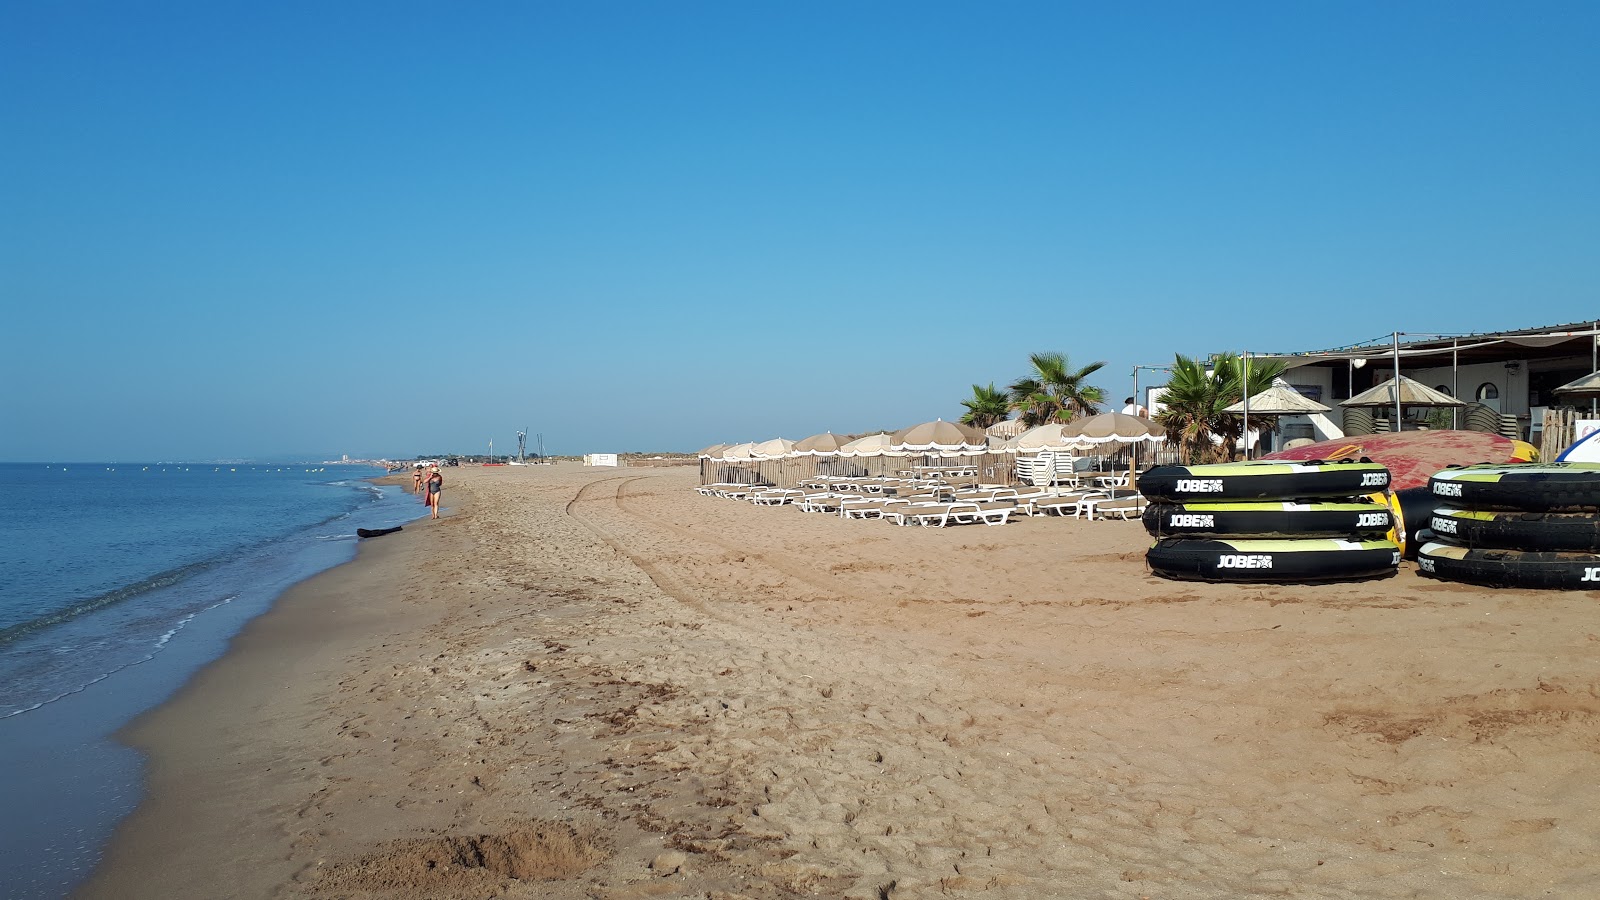 Beziers plage'in fotoğrafı - rahatlamayı sevenler arasında popüler bir yer